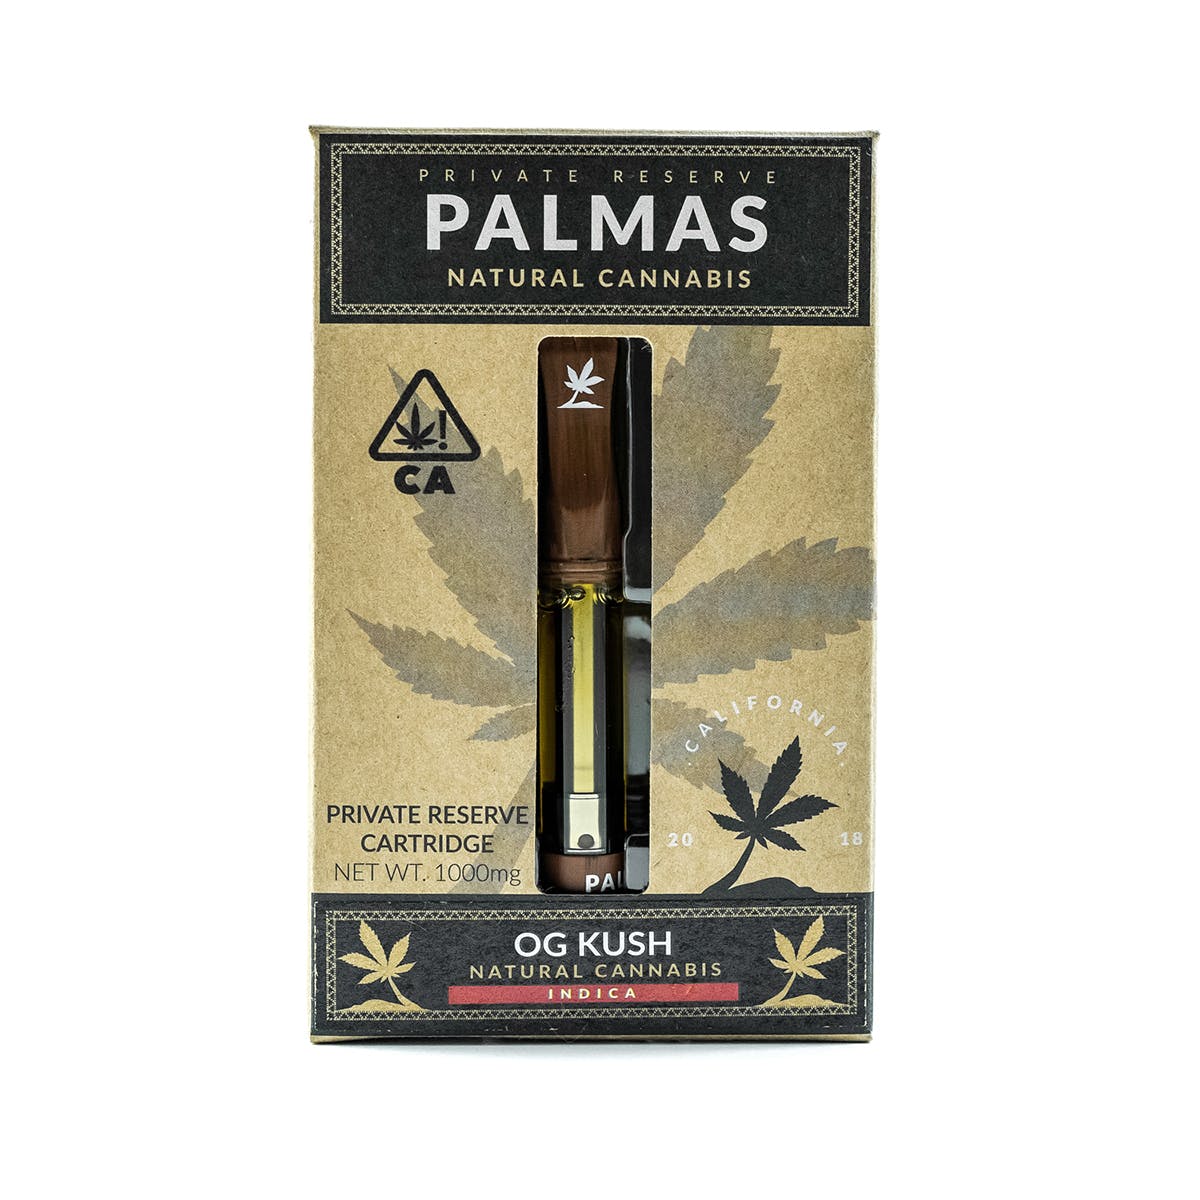 marijuana-dispensaries-firestone-20-cap-in-los-angeles-palmas-private-reserve-cartridge-og-kush